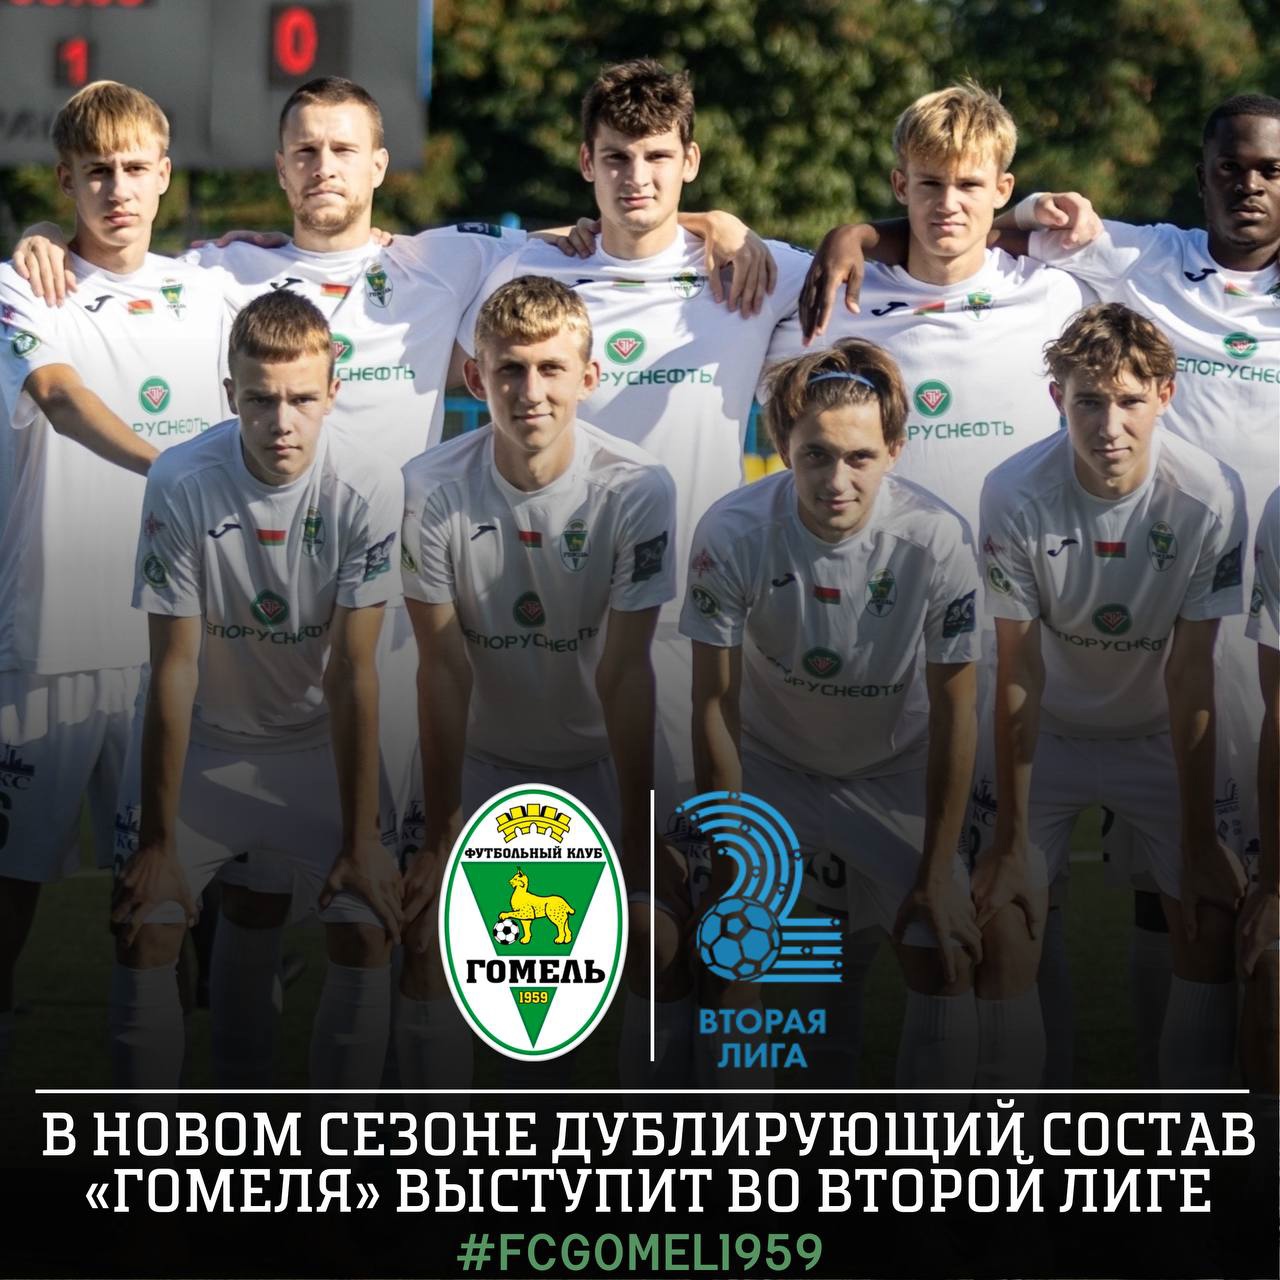 Дублирующий состав ФК «Гомель» будет выступать во Второй лиге